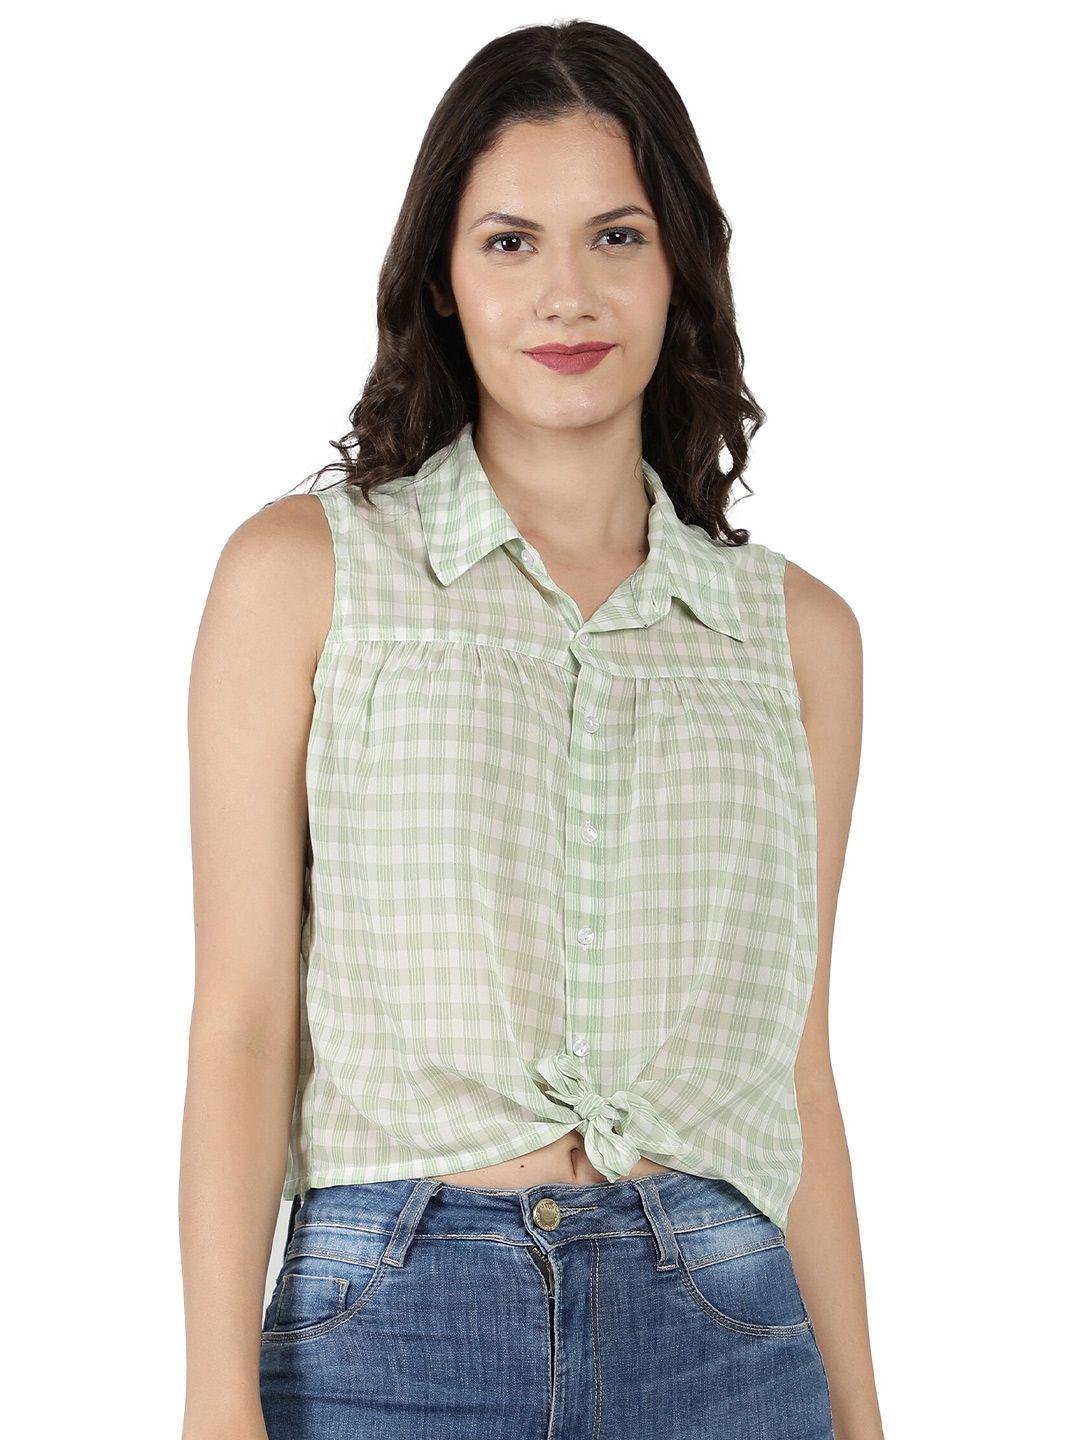 nuevosdamas women green checked shirt style crop top